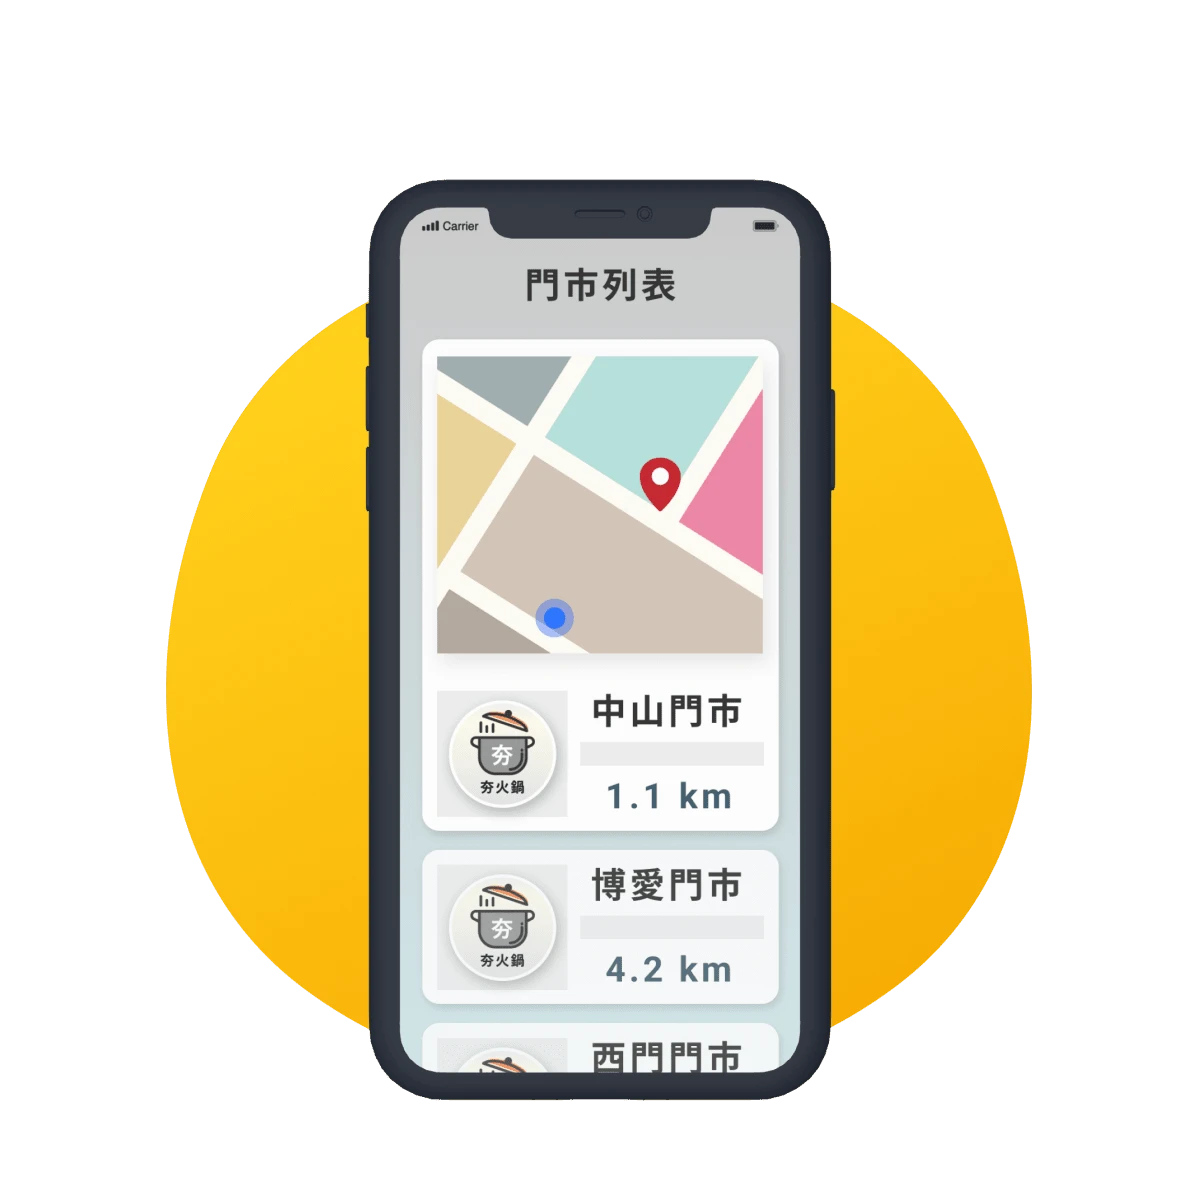 會員可透過 APP 查看門市 GPS 地圖與定位距離，引領會員前往門市消費。By 威許移動